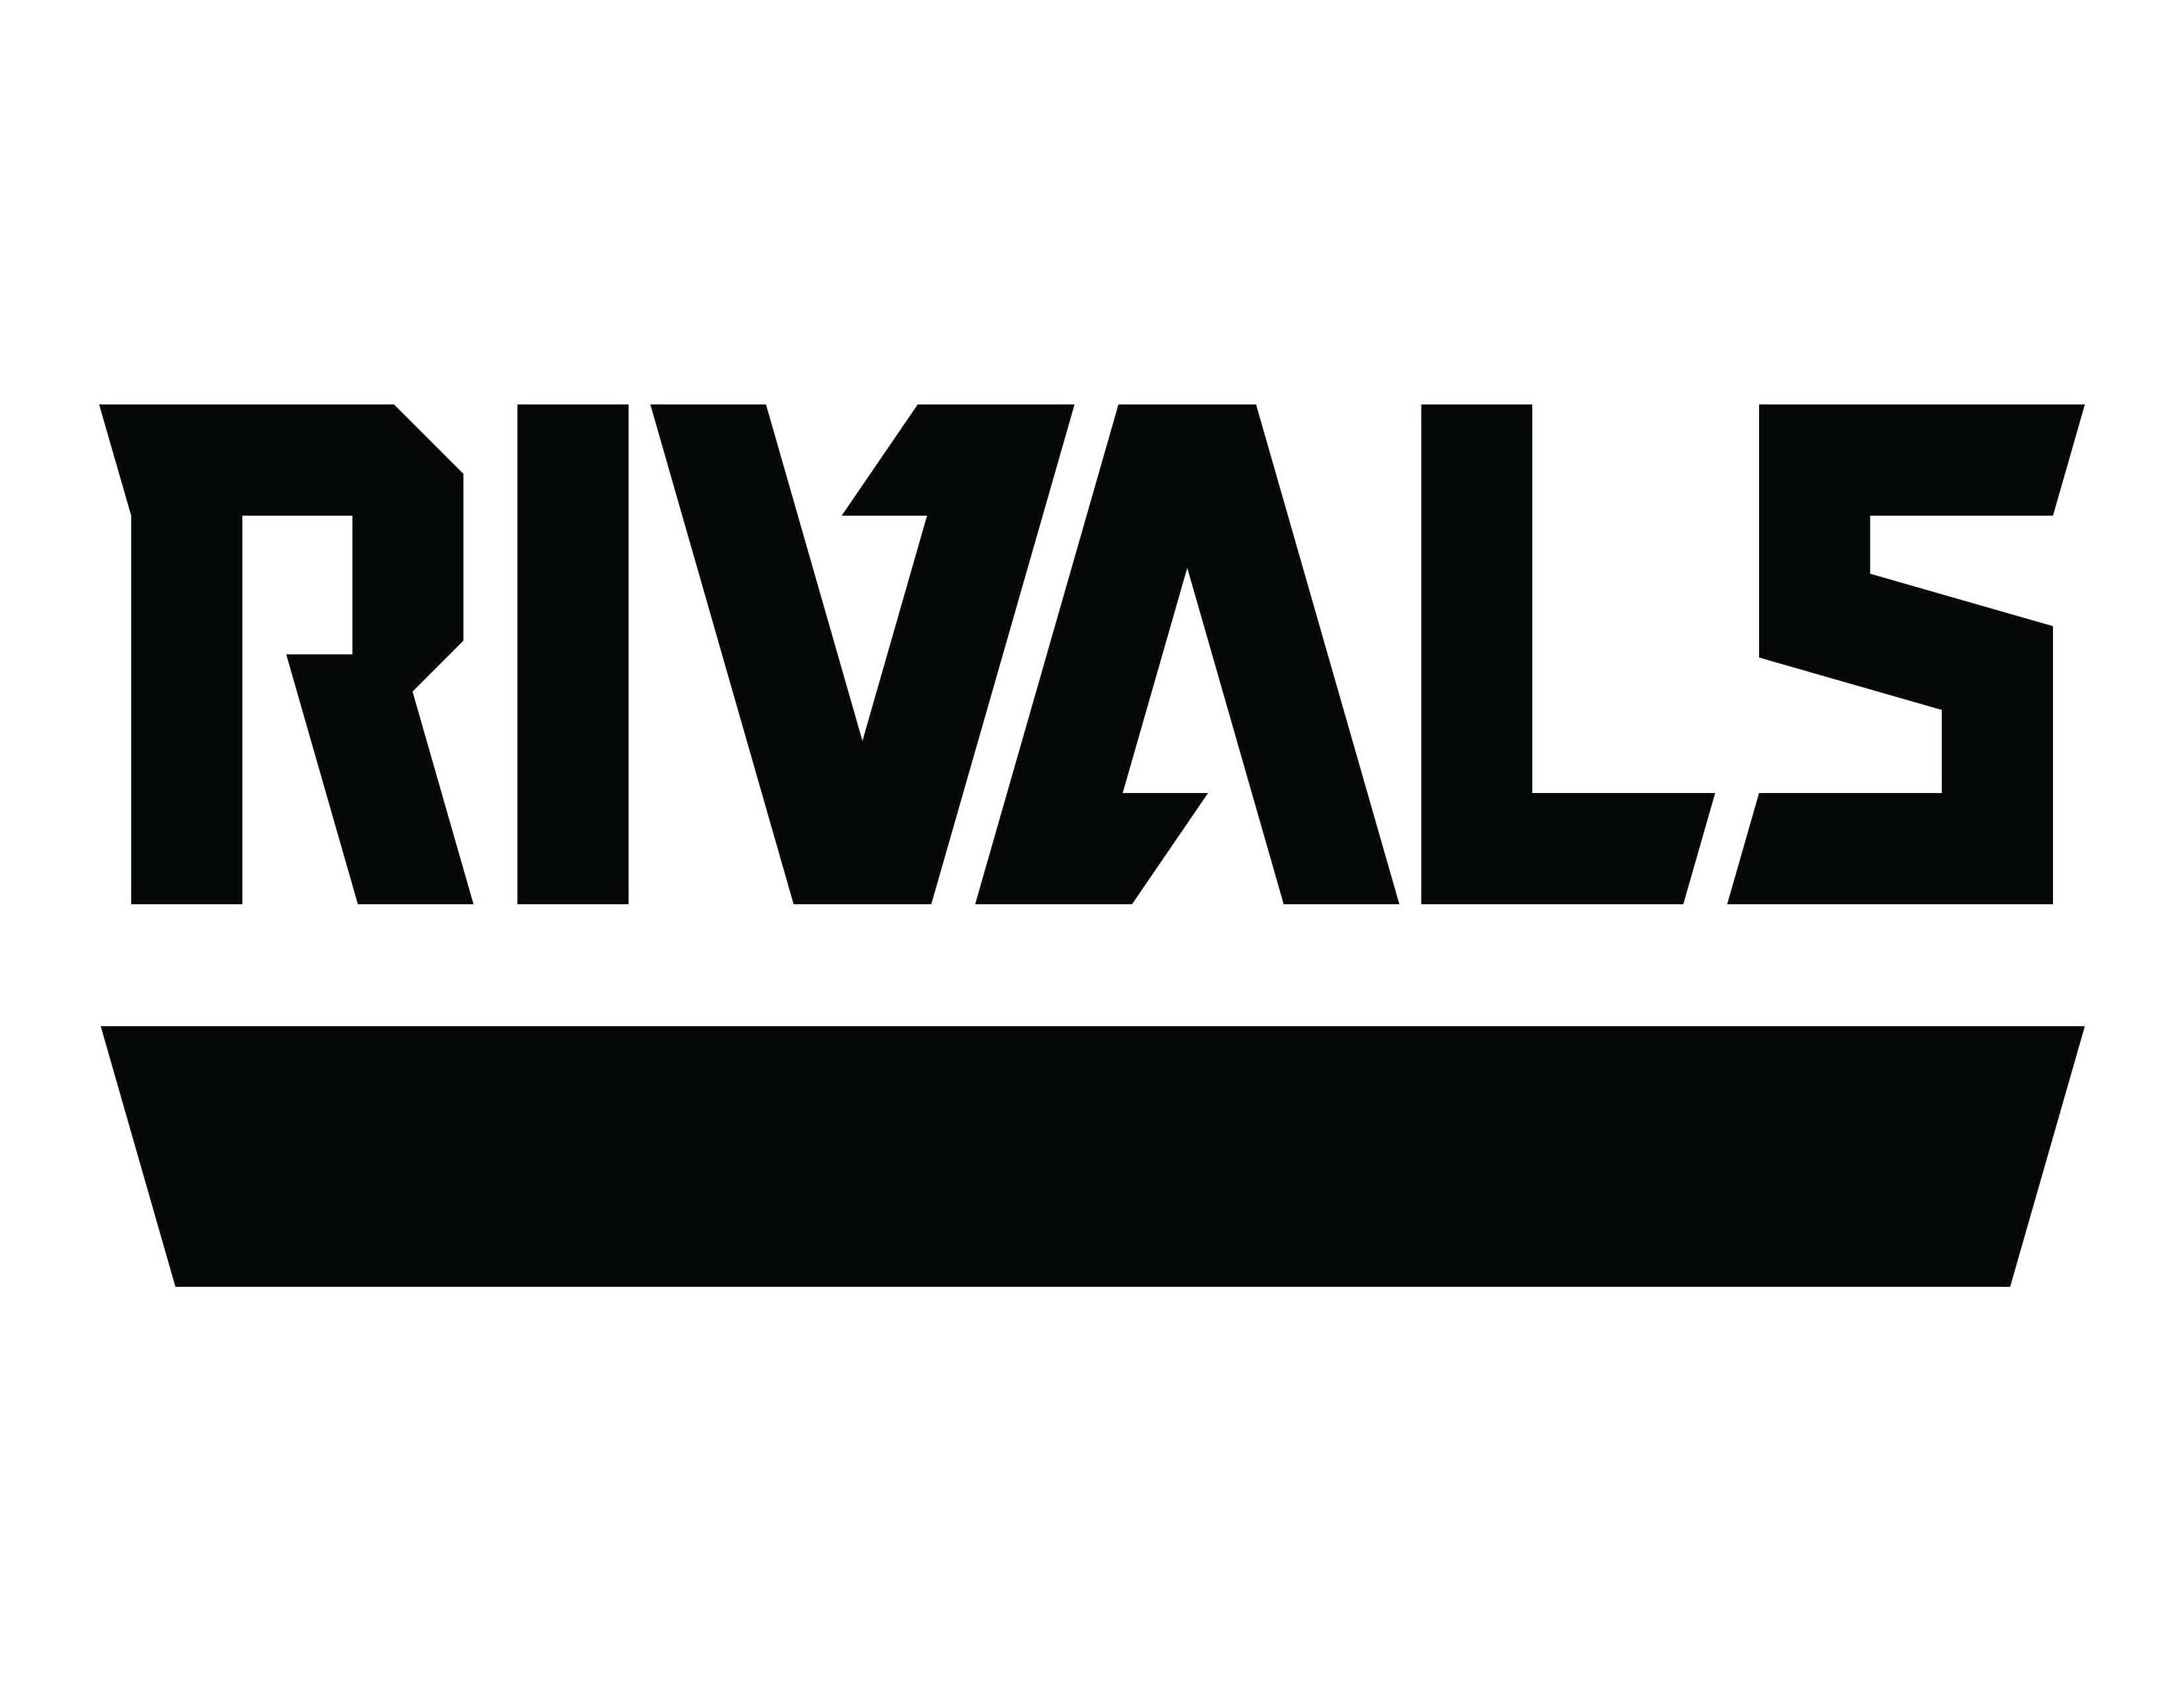 Trademark Logo RIVALS